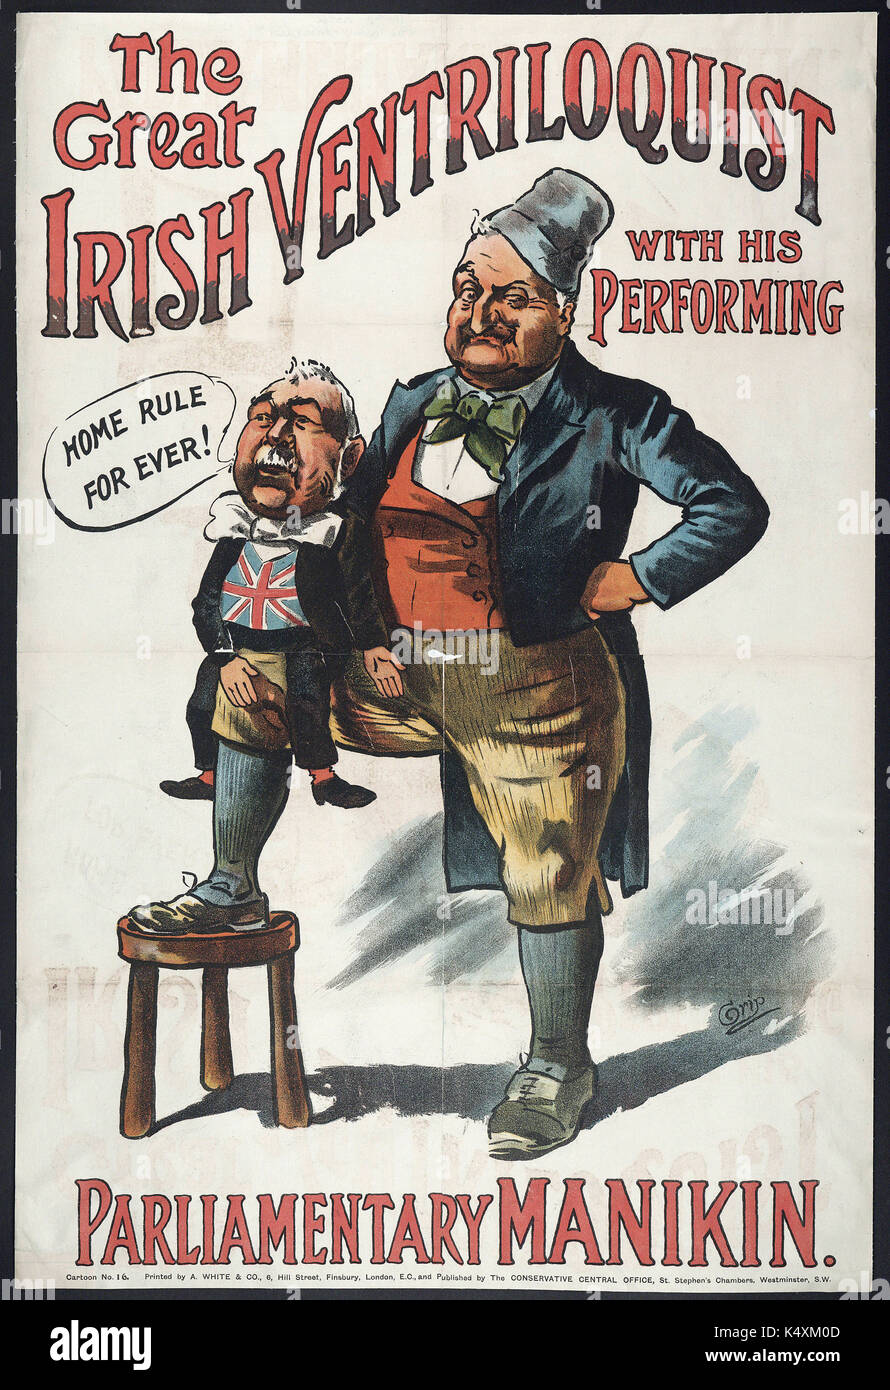 Il grande ventriloquo irlandese, con la sua esecuzione di manichino parlamentare - British manifesti politici, C1905-c1910 Foto Stock